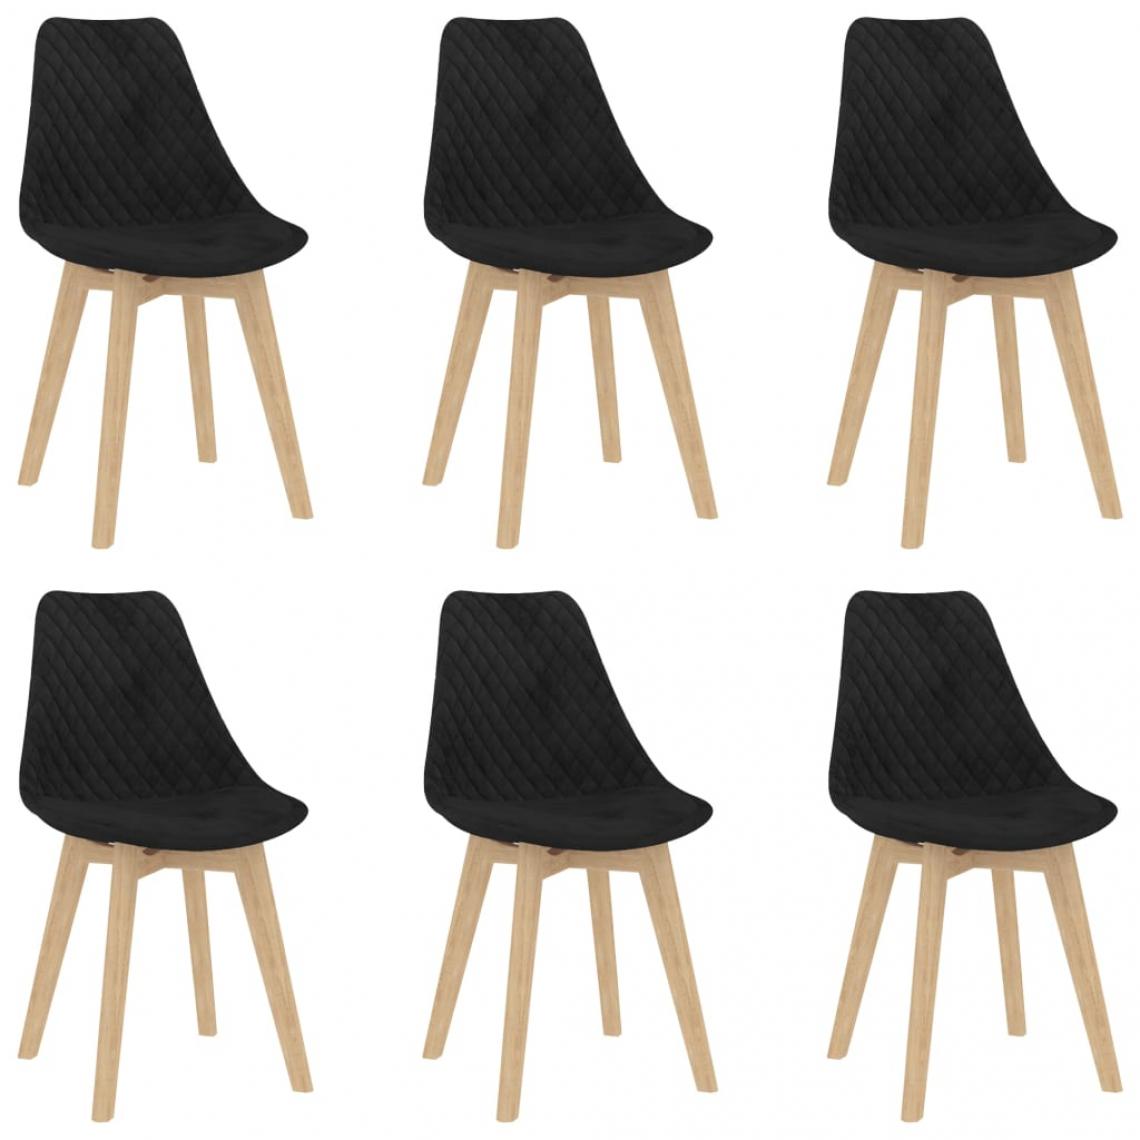 Decoshop26 - Lot de 6 chaises de salle à manger cuisine design moderne velours noir CDS022737 - Chaises